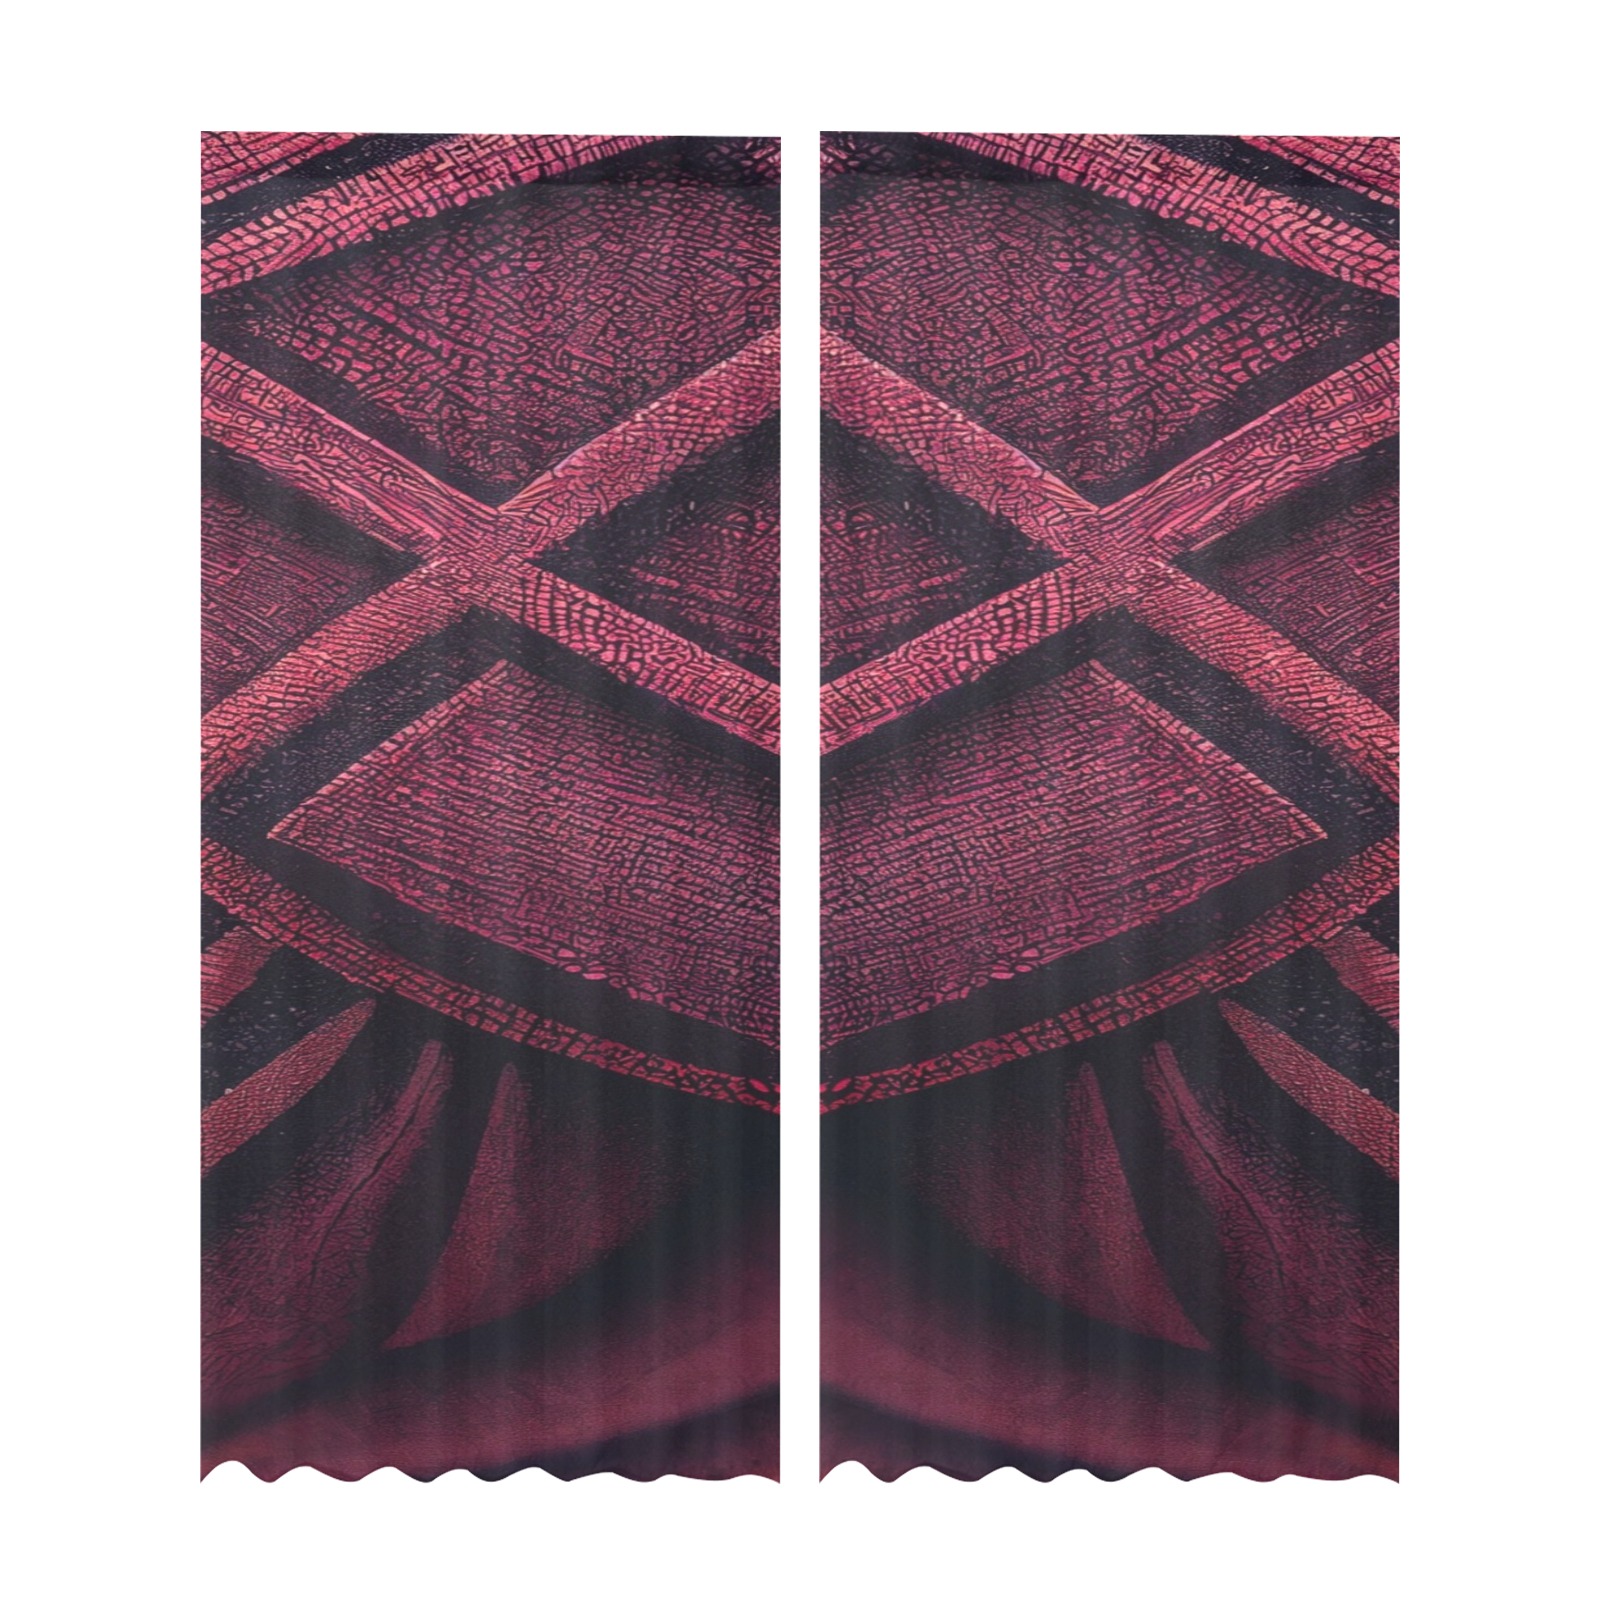 burgundy diamond pattern Gauze Curtain 28"x95" (Two-Piece)